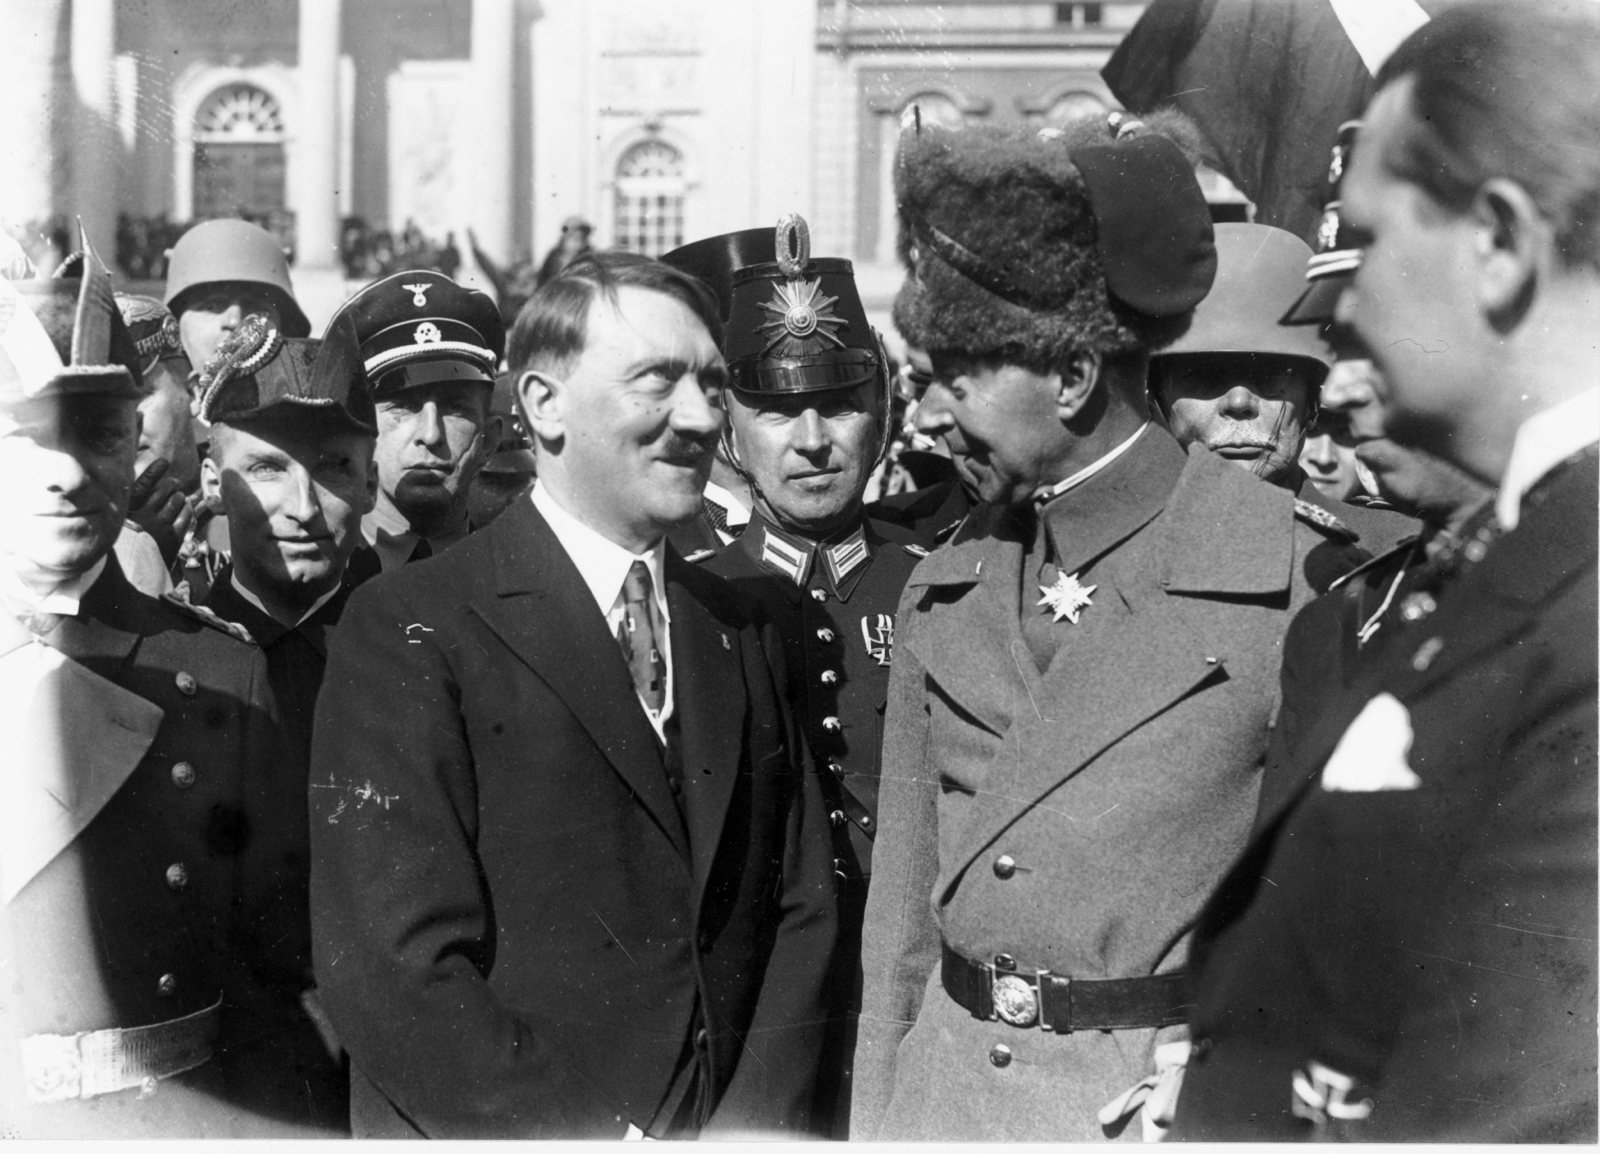 Helping Hitler: An Exchange